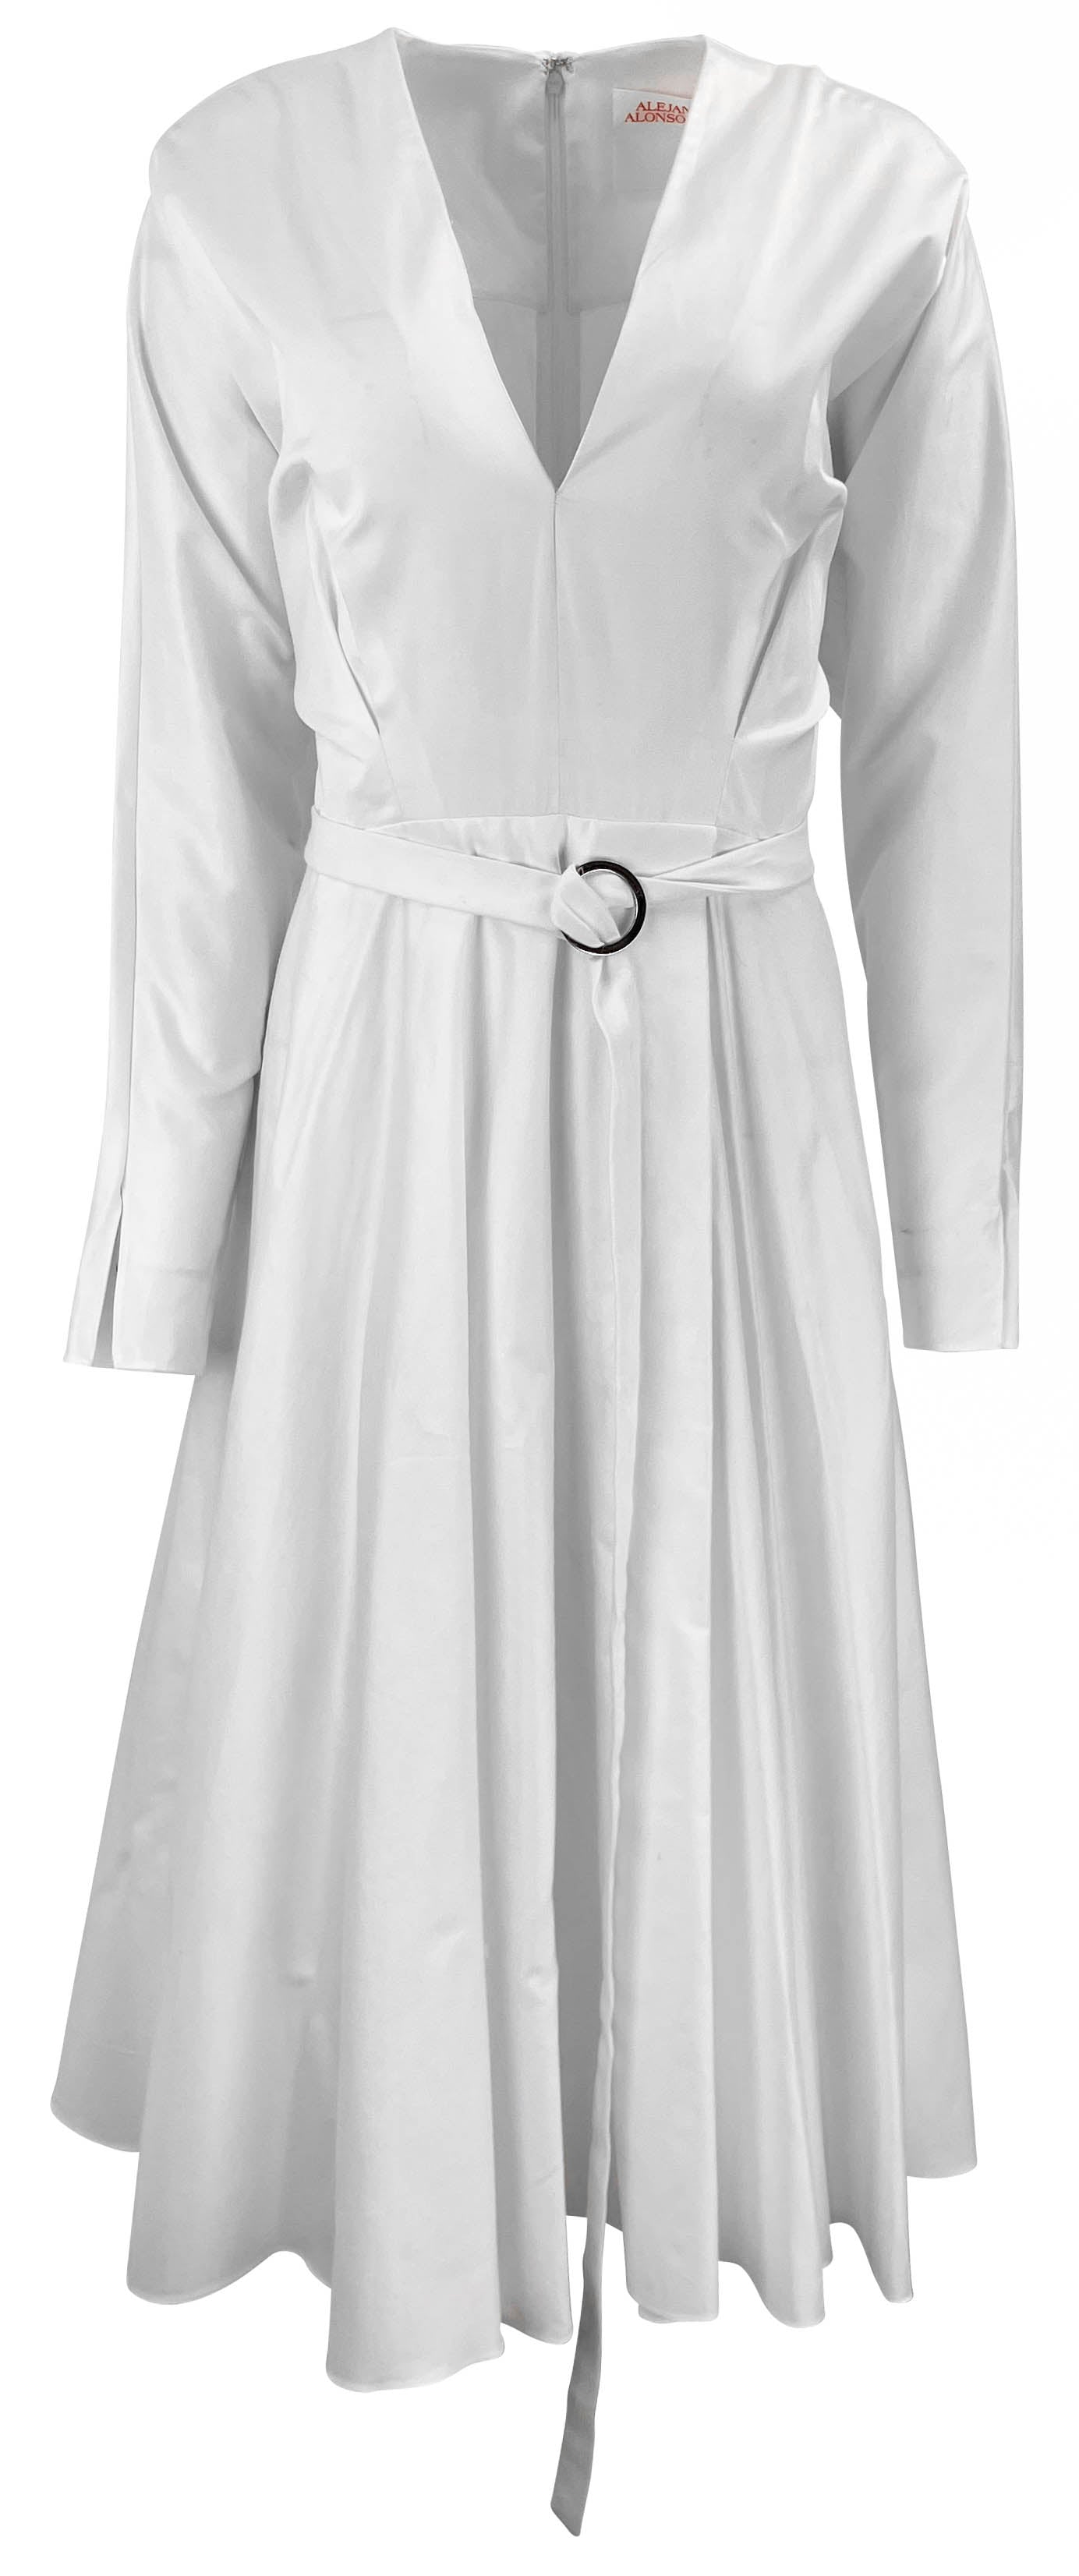 Alejandra Alonso Rojas Belted V-Neck Dress in White - Discounts on Alejandra Alonso Rojas at UAL